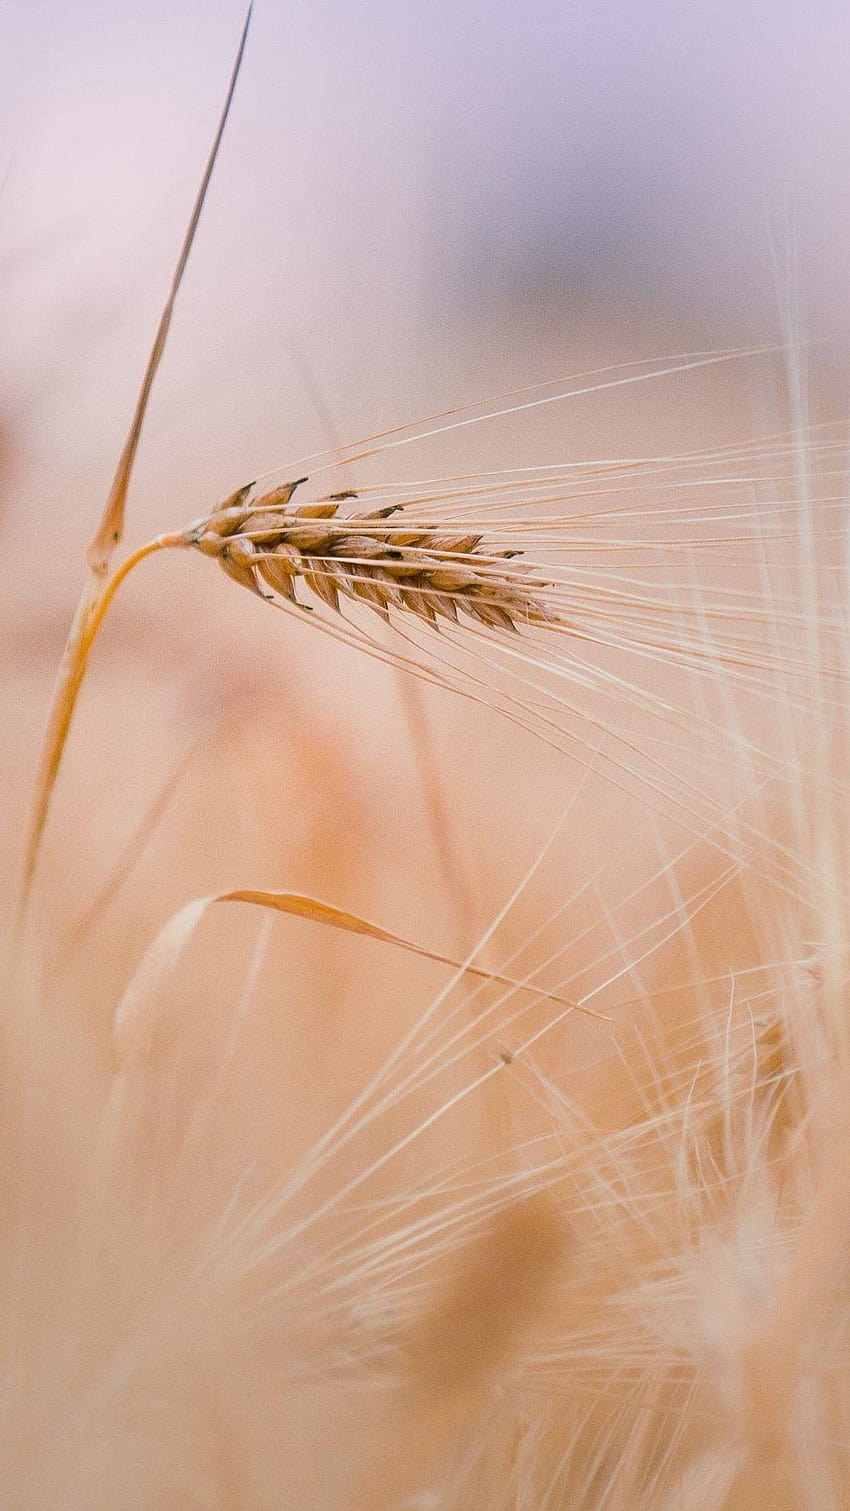 ↑↑TIPP UND HOL DIR DIE APP! Natur Weizen im Feld Gelbe Roggenohr, Blumenweizenfeld HD-Handy-Hintergrundbild